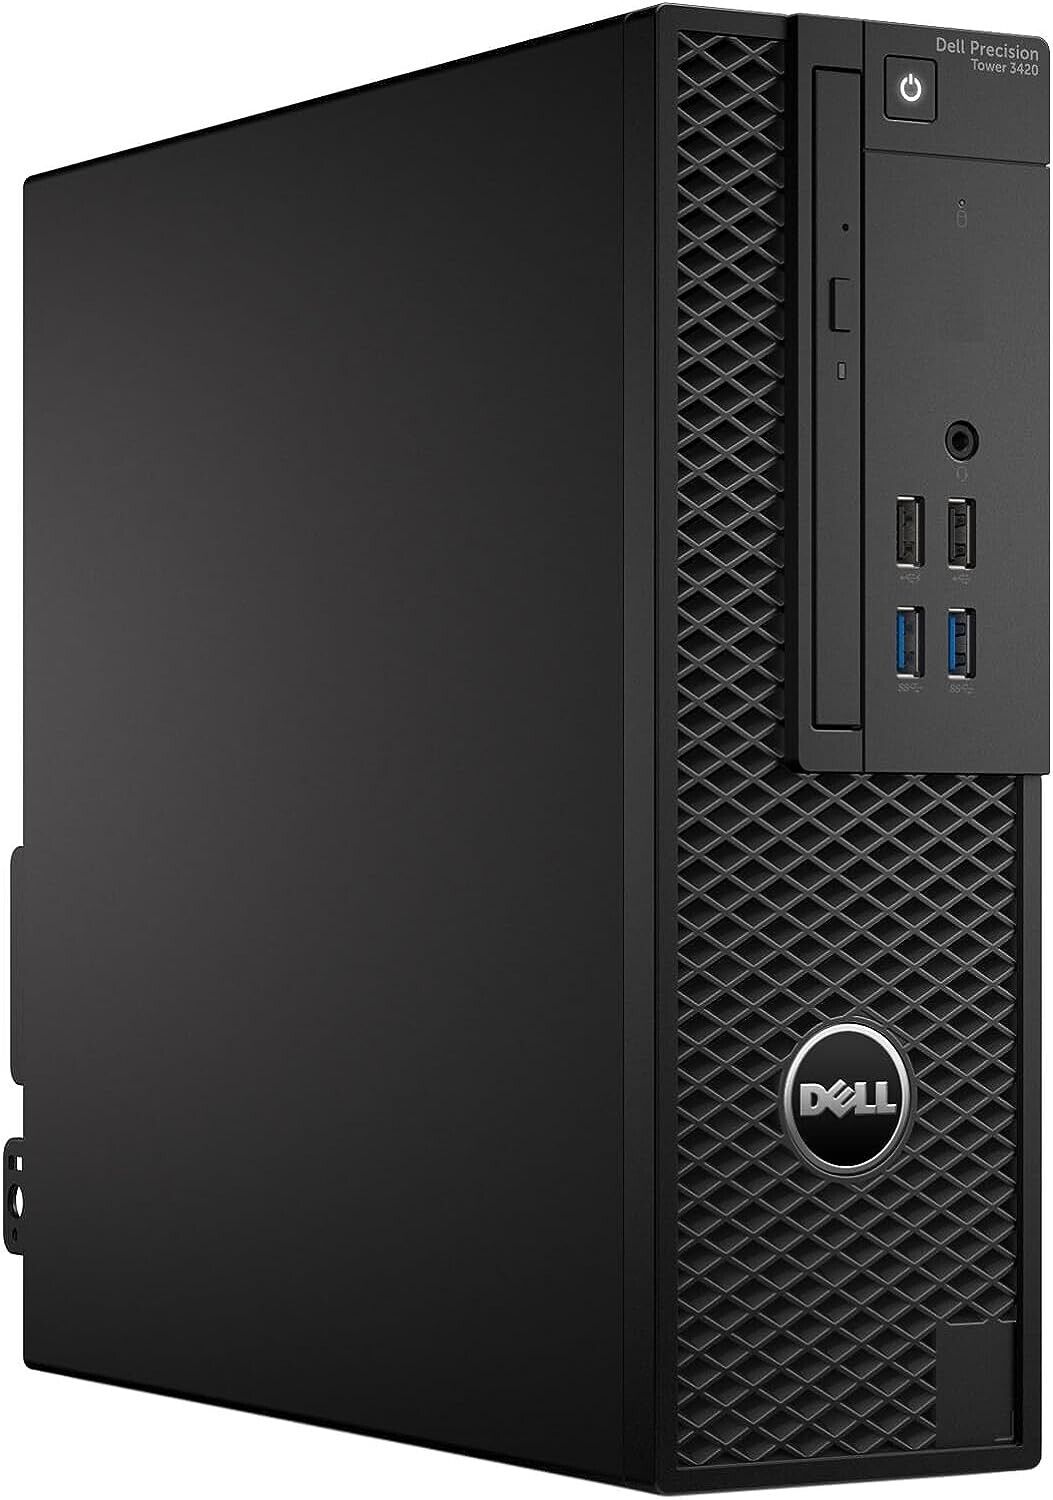 Dell Precision 3420, Workstation Intel Core i7-6700 3.40GHz, 8GB, 1TB, NVIDIA Quadro K420, Windows 10 Pro 64-bit